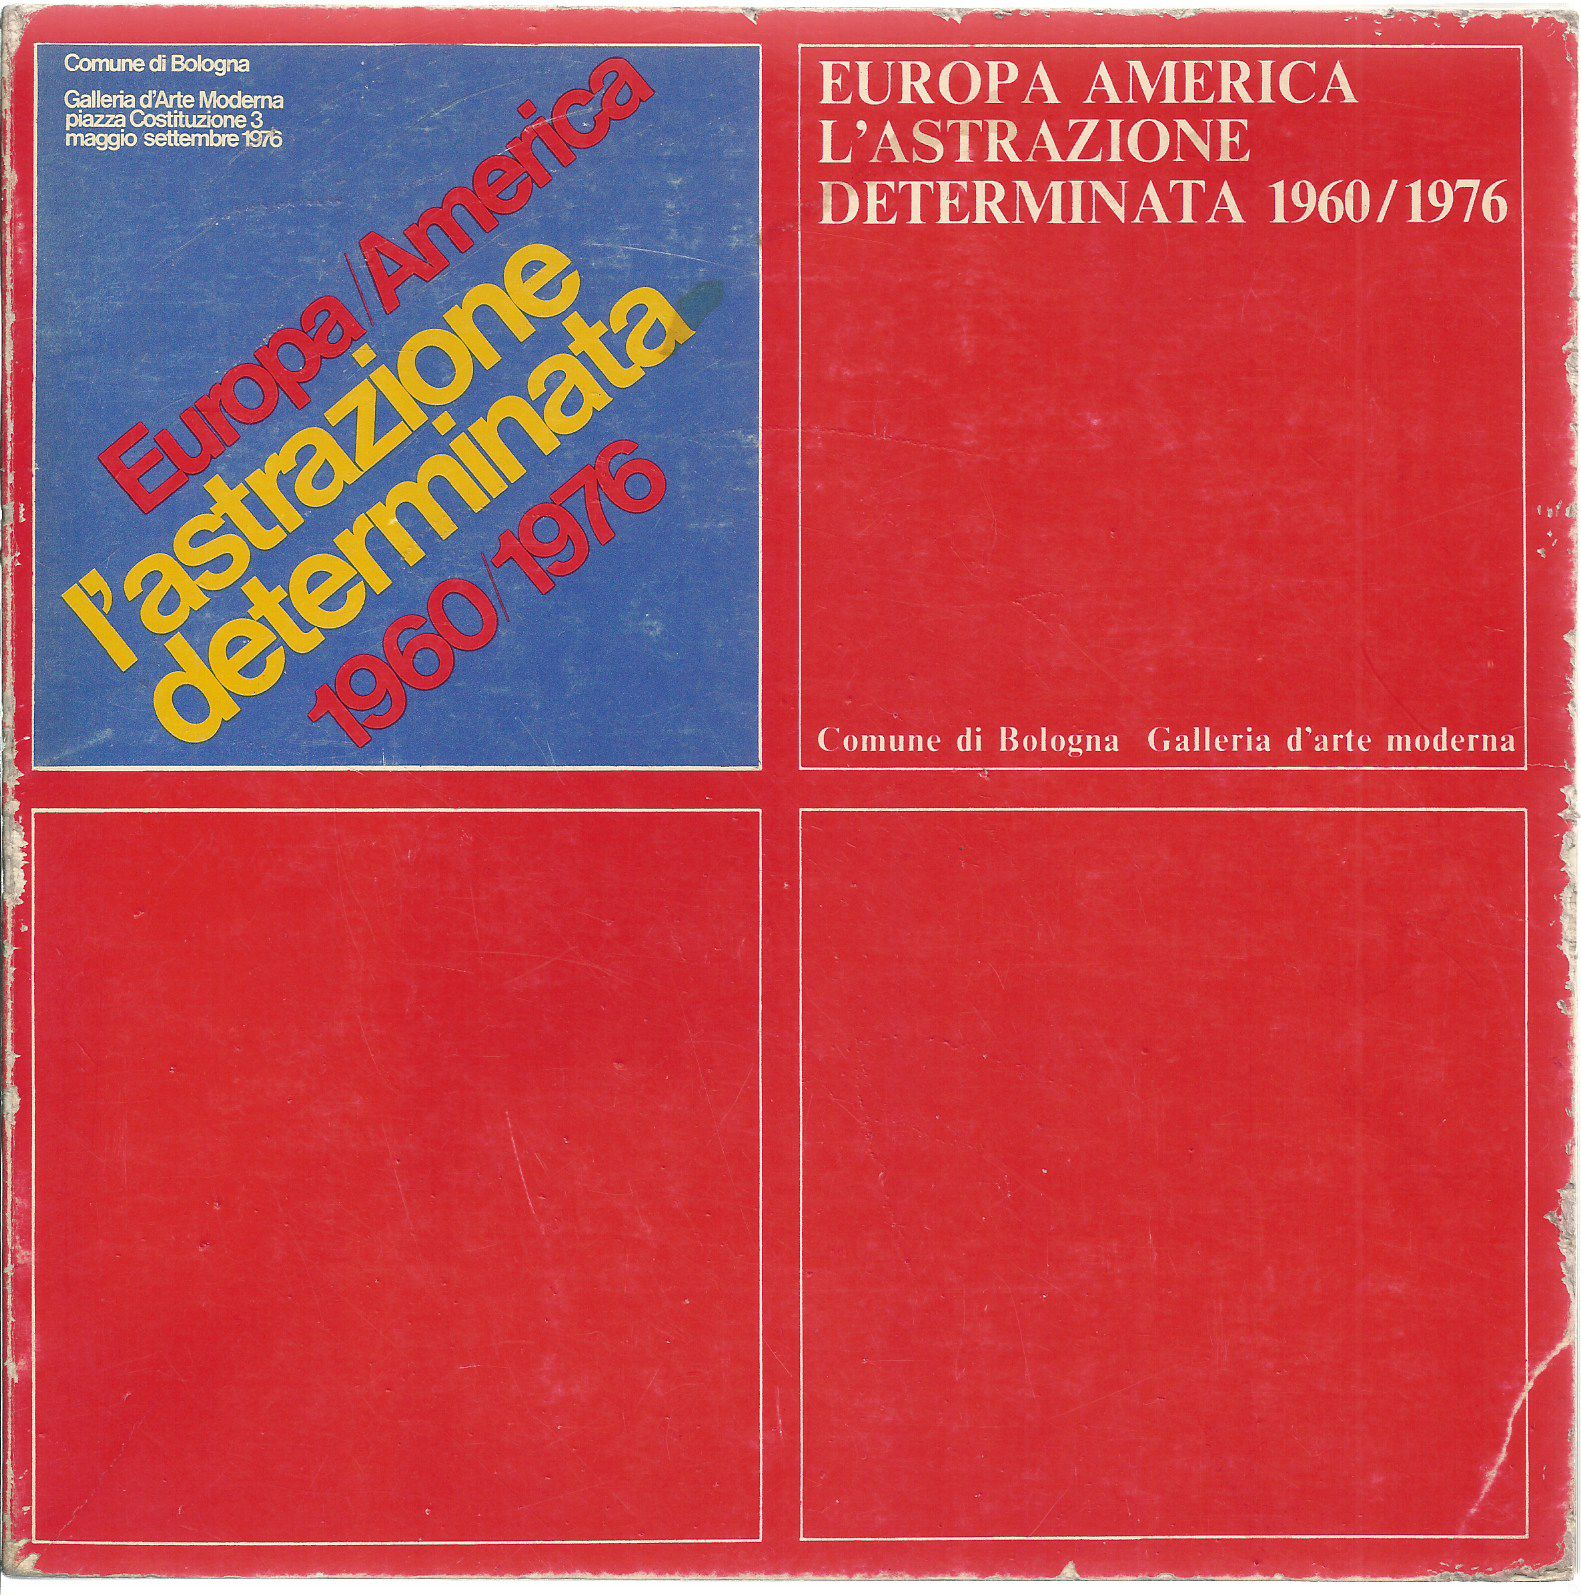 Europa America. L'astrazione determinata 1960/1976